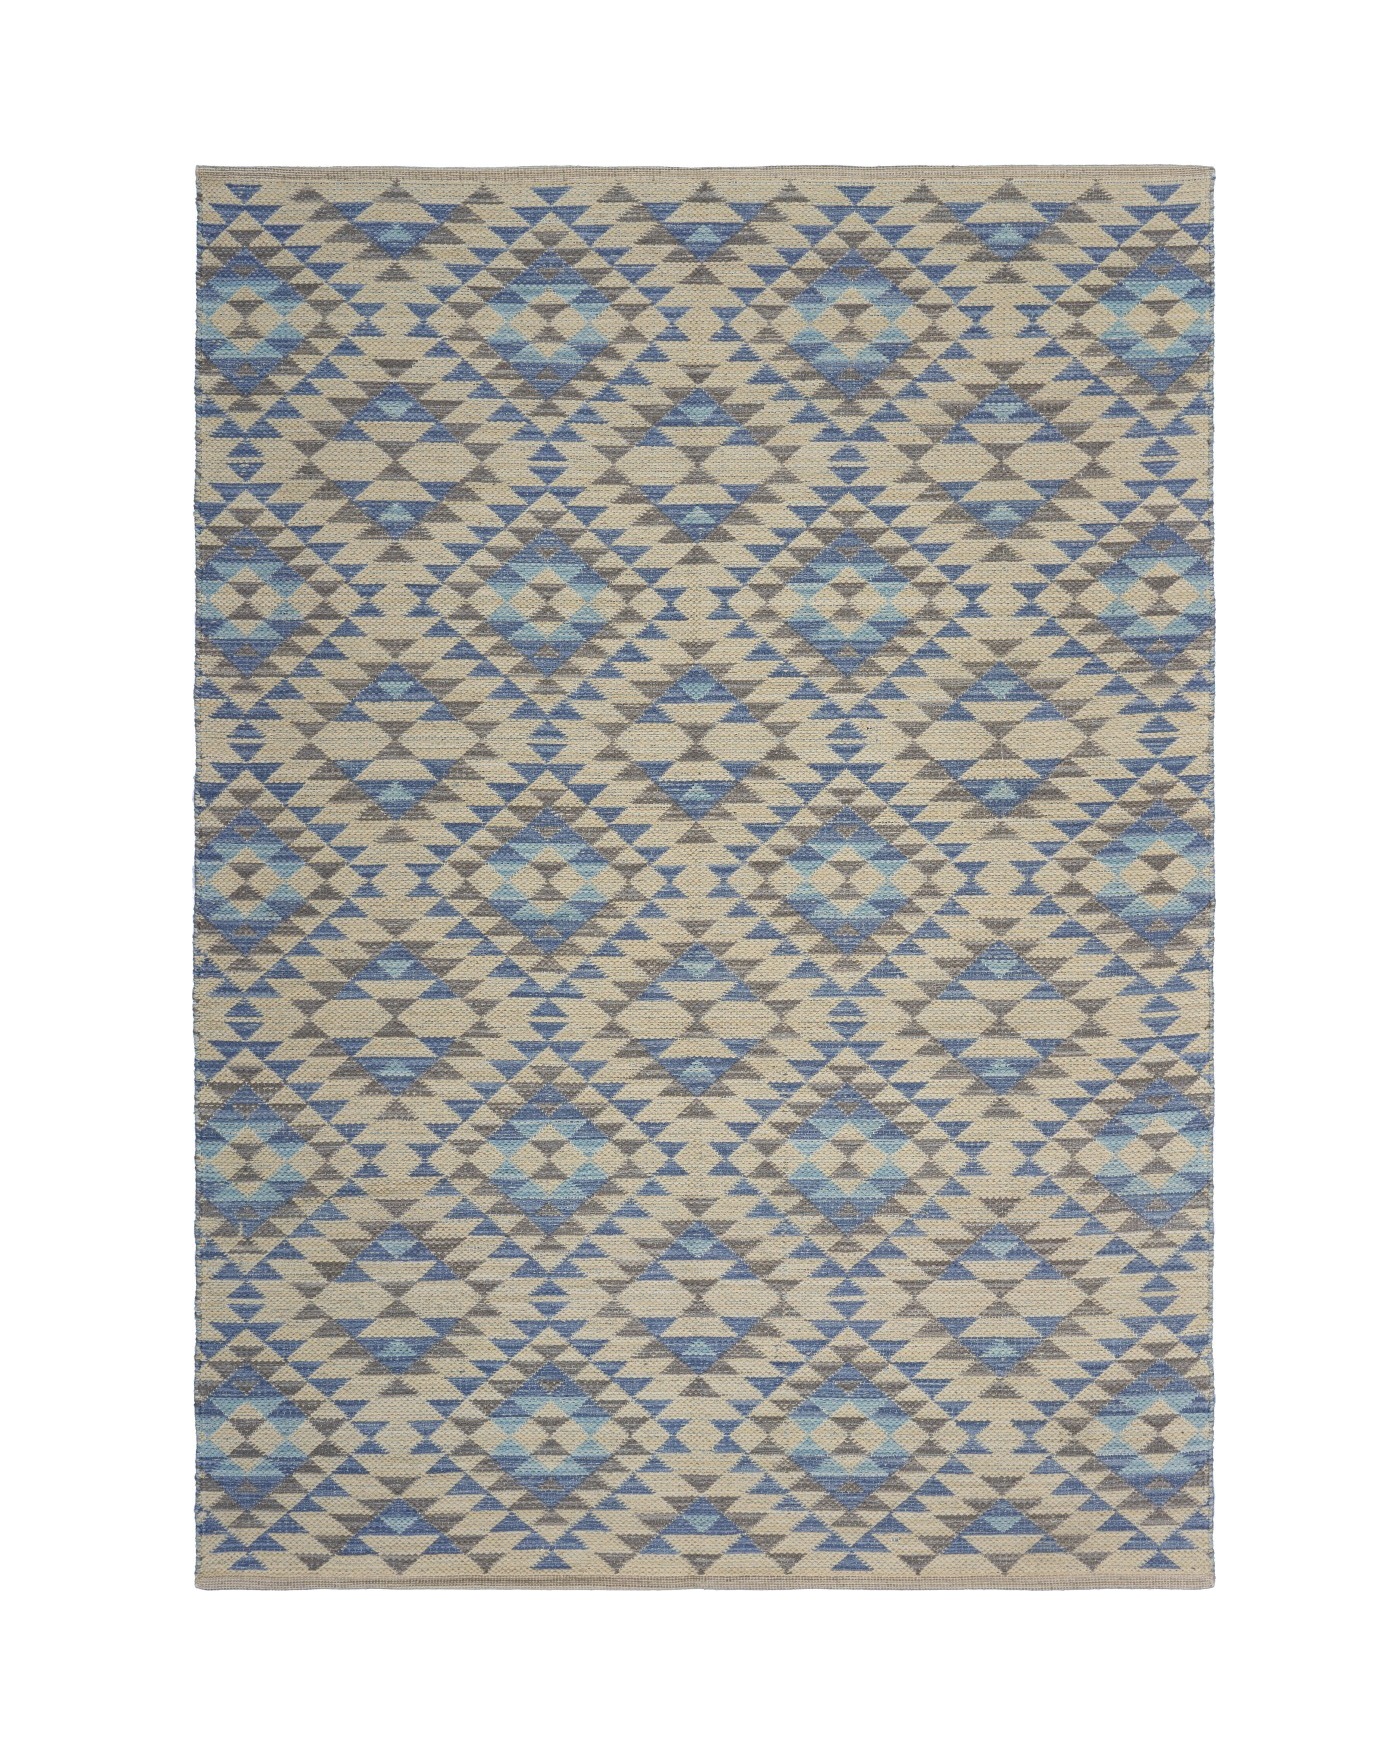 3’ x 4’ Blue Decorative Lattice Area Rug-395480-1